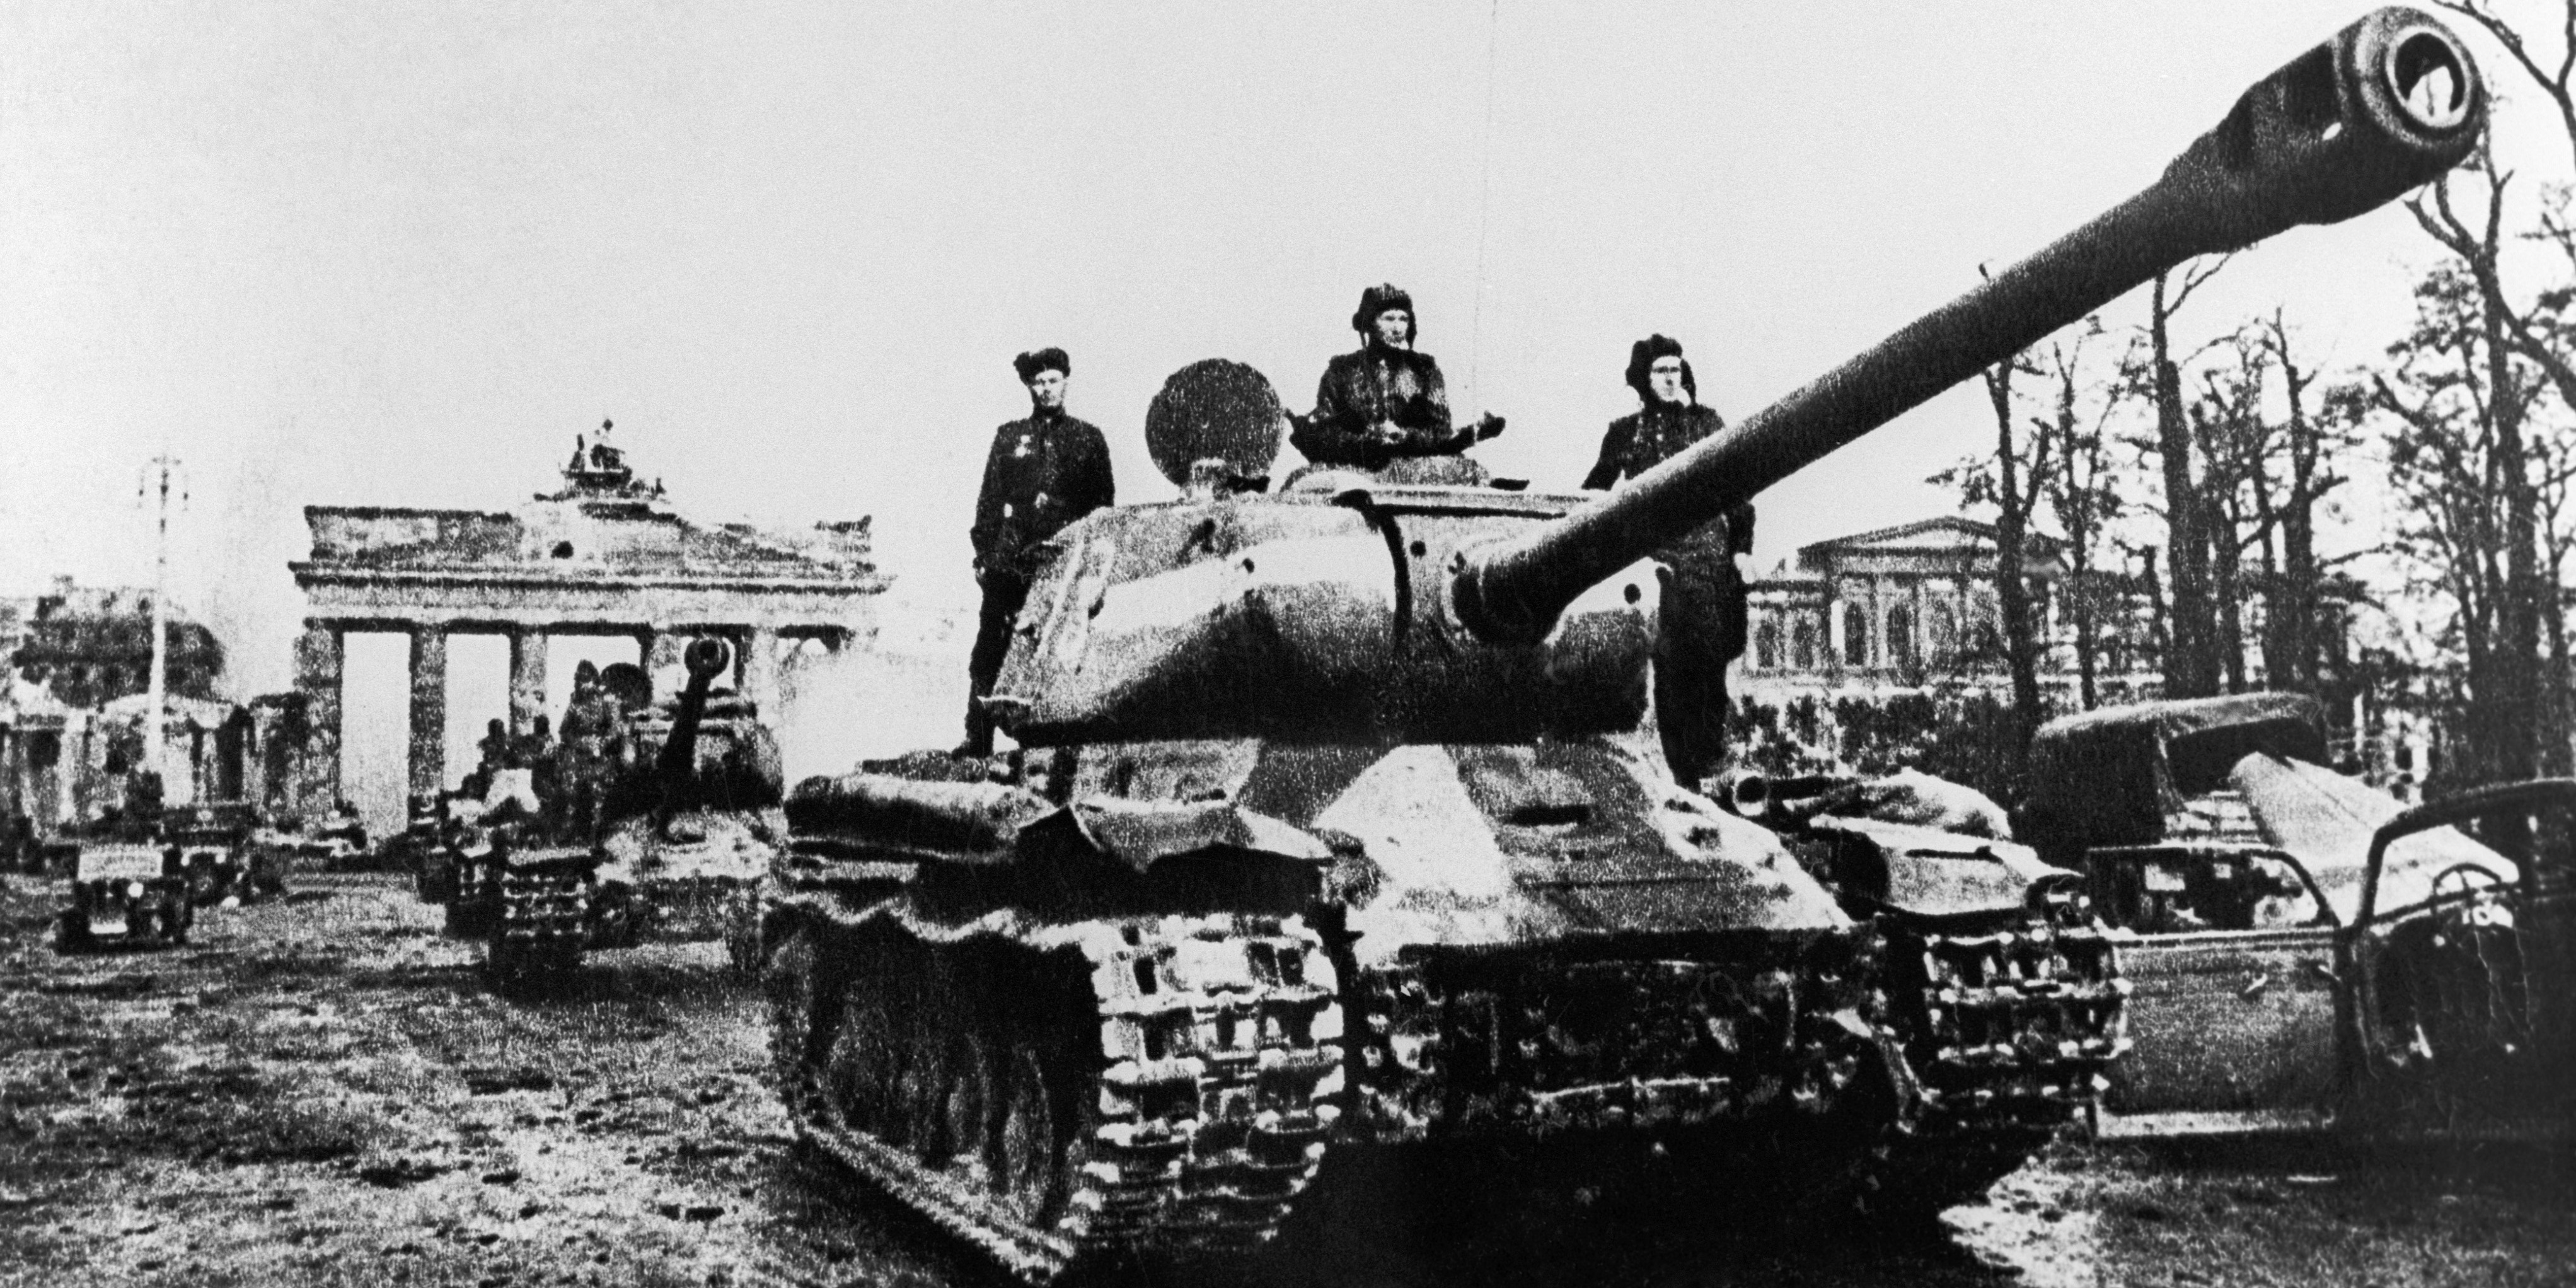 Танк войны ис. ИС-2 В Берлине. Танк ИС 2 ВОВ. ИС-2 В Берлине 1945.